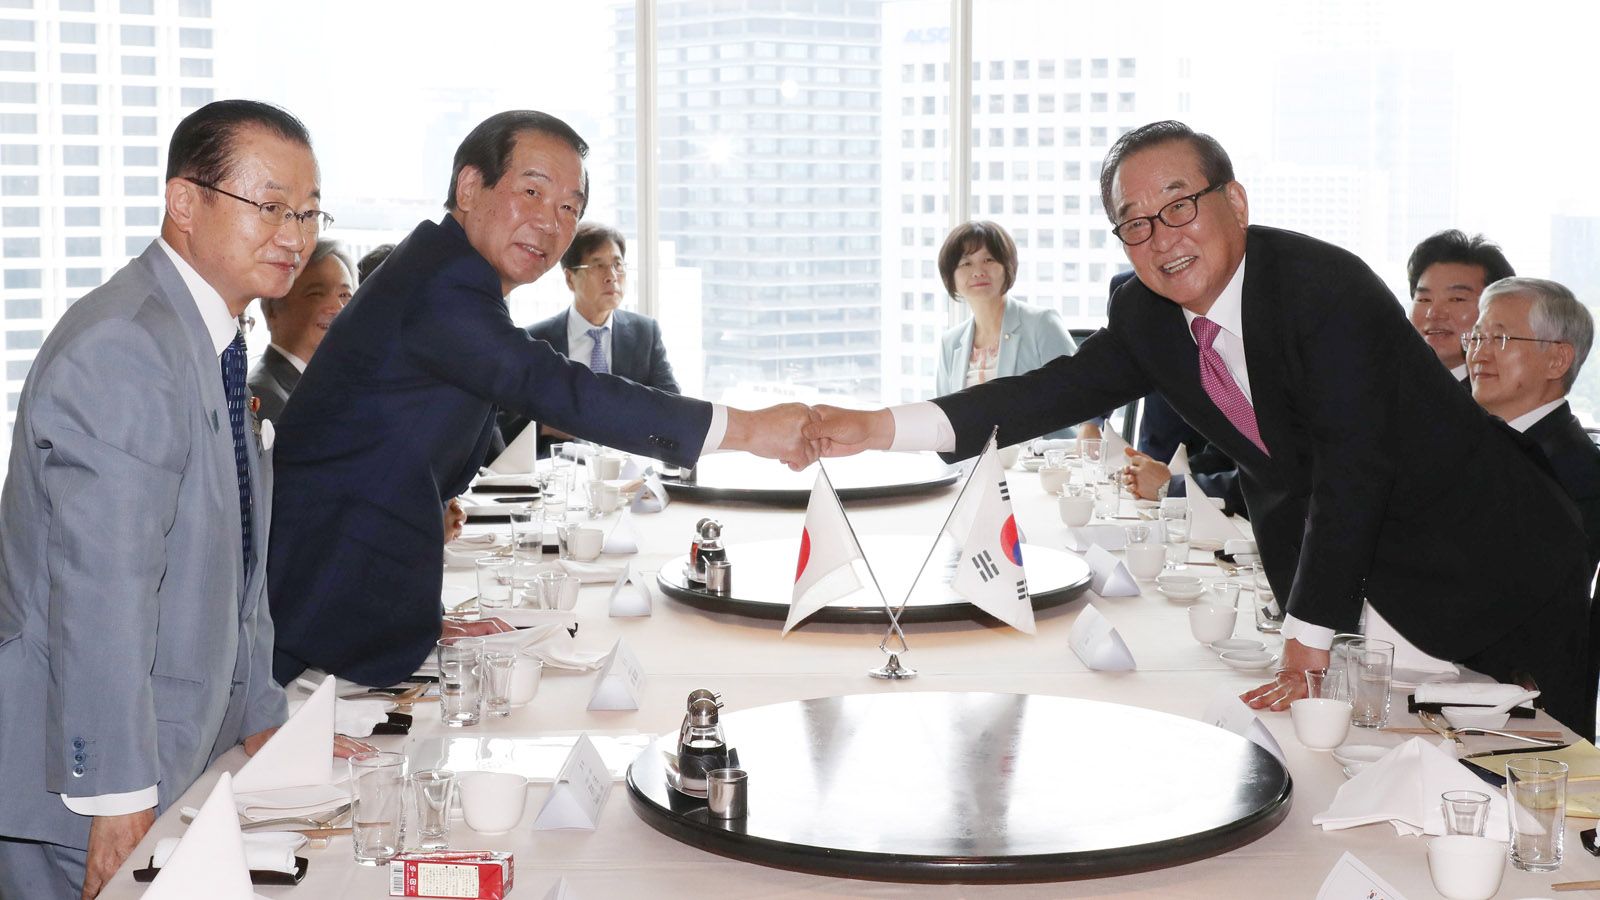 真摯な対話が重要､韓国の窓口は開かれている 日本通の国会議員カン･チャンイル氏が語る | 韓国･北朝鮮 | 東洋経済オンライン